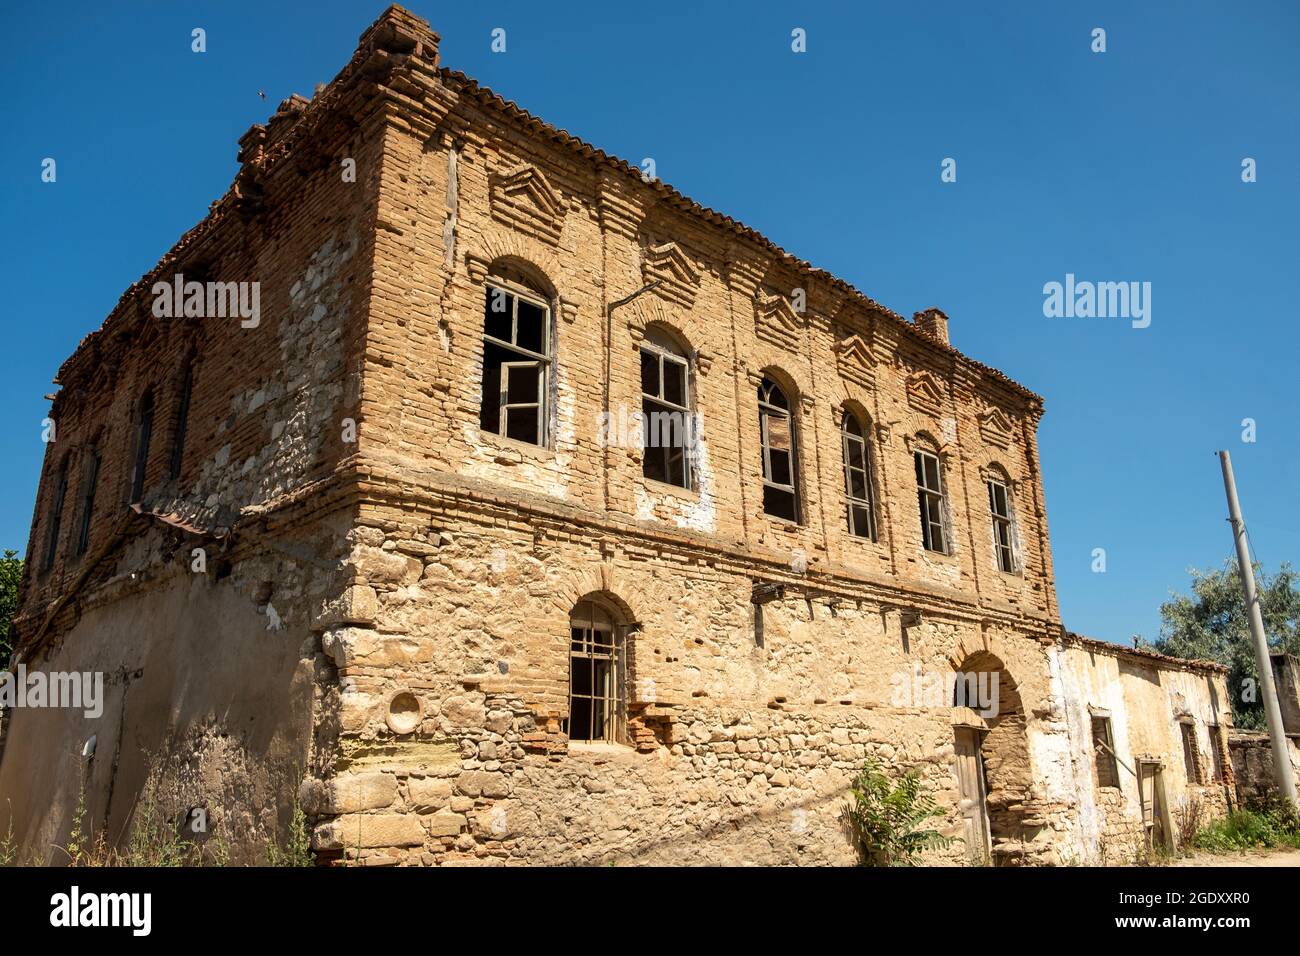 Le village d'aksu, qui est relié au district de biga de la province de çanakkale en turquie. Il y a quelques maisons anciennes dans le village d'aksu. Banque D'Images